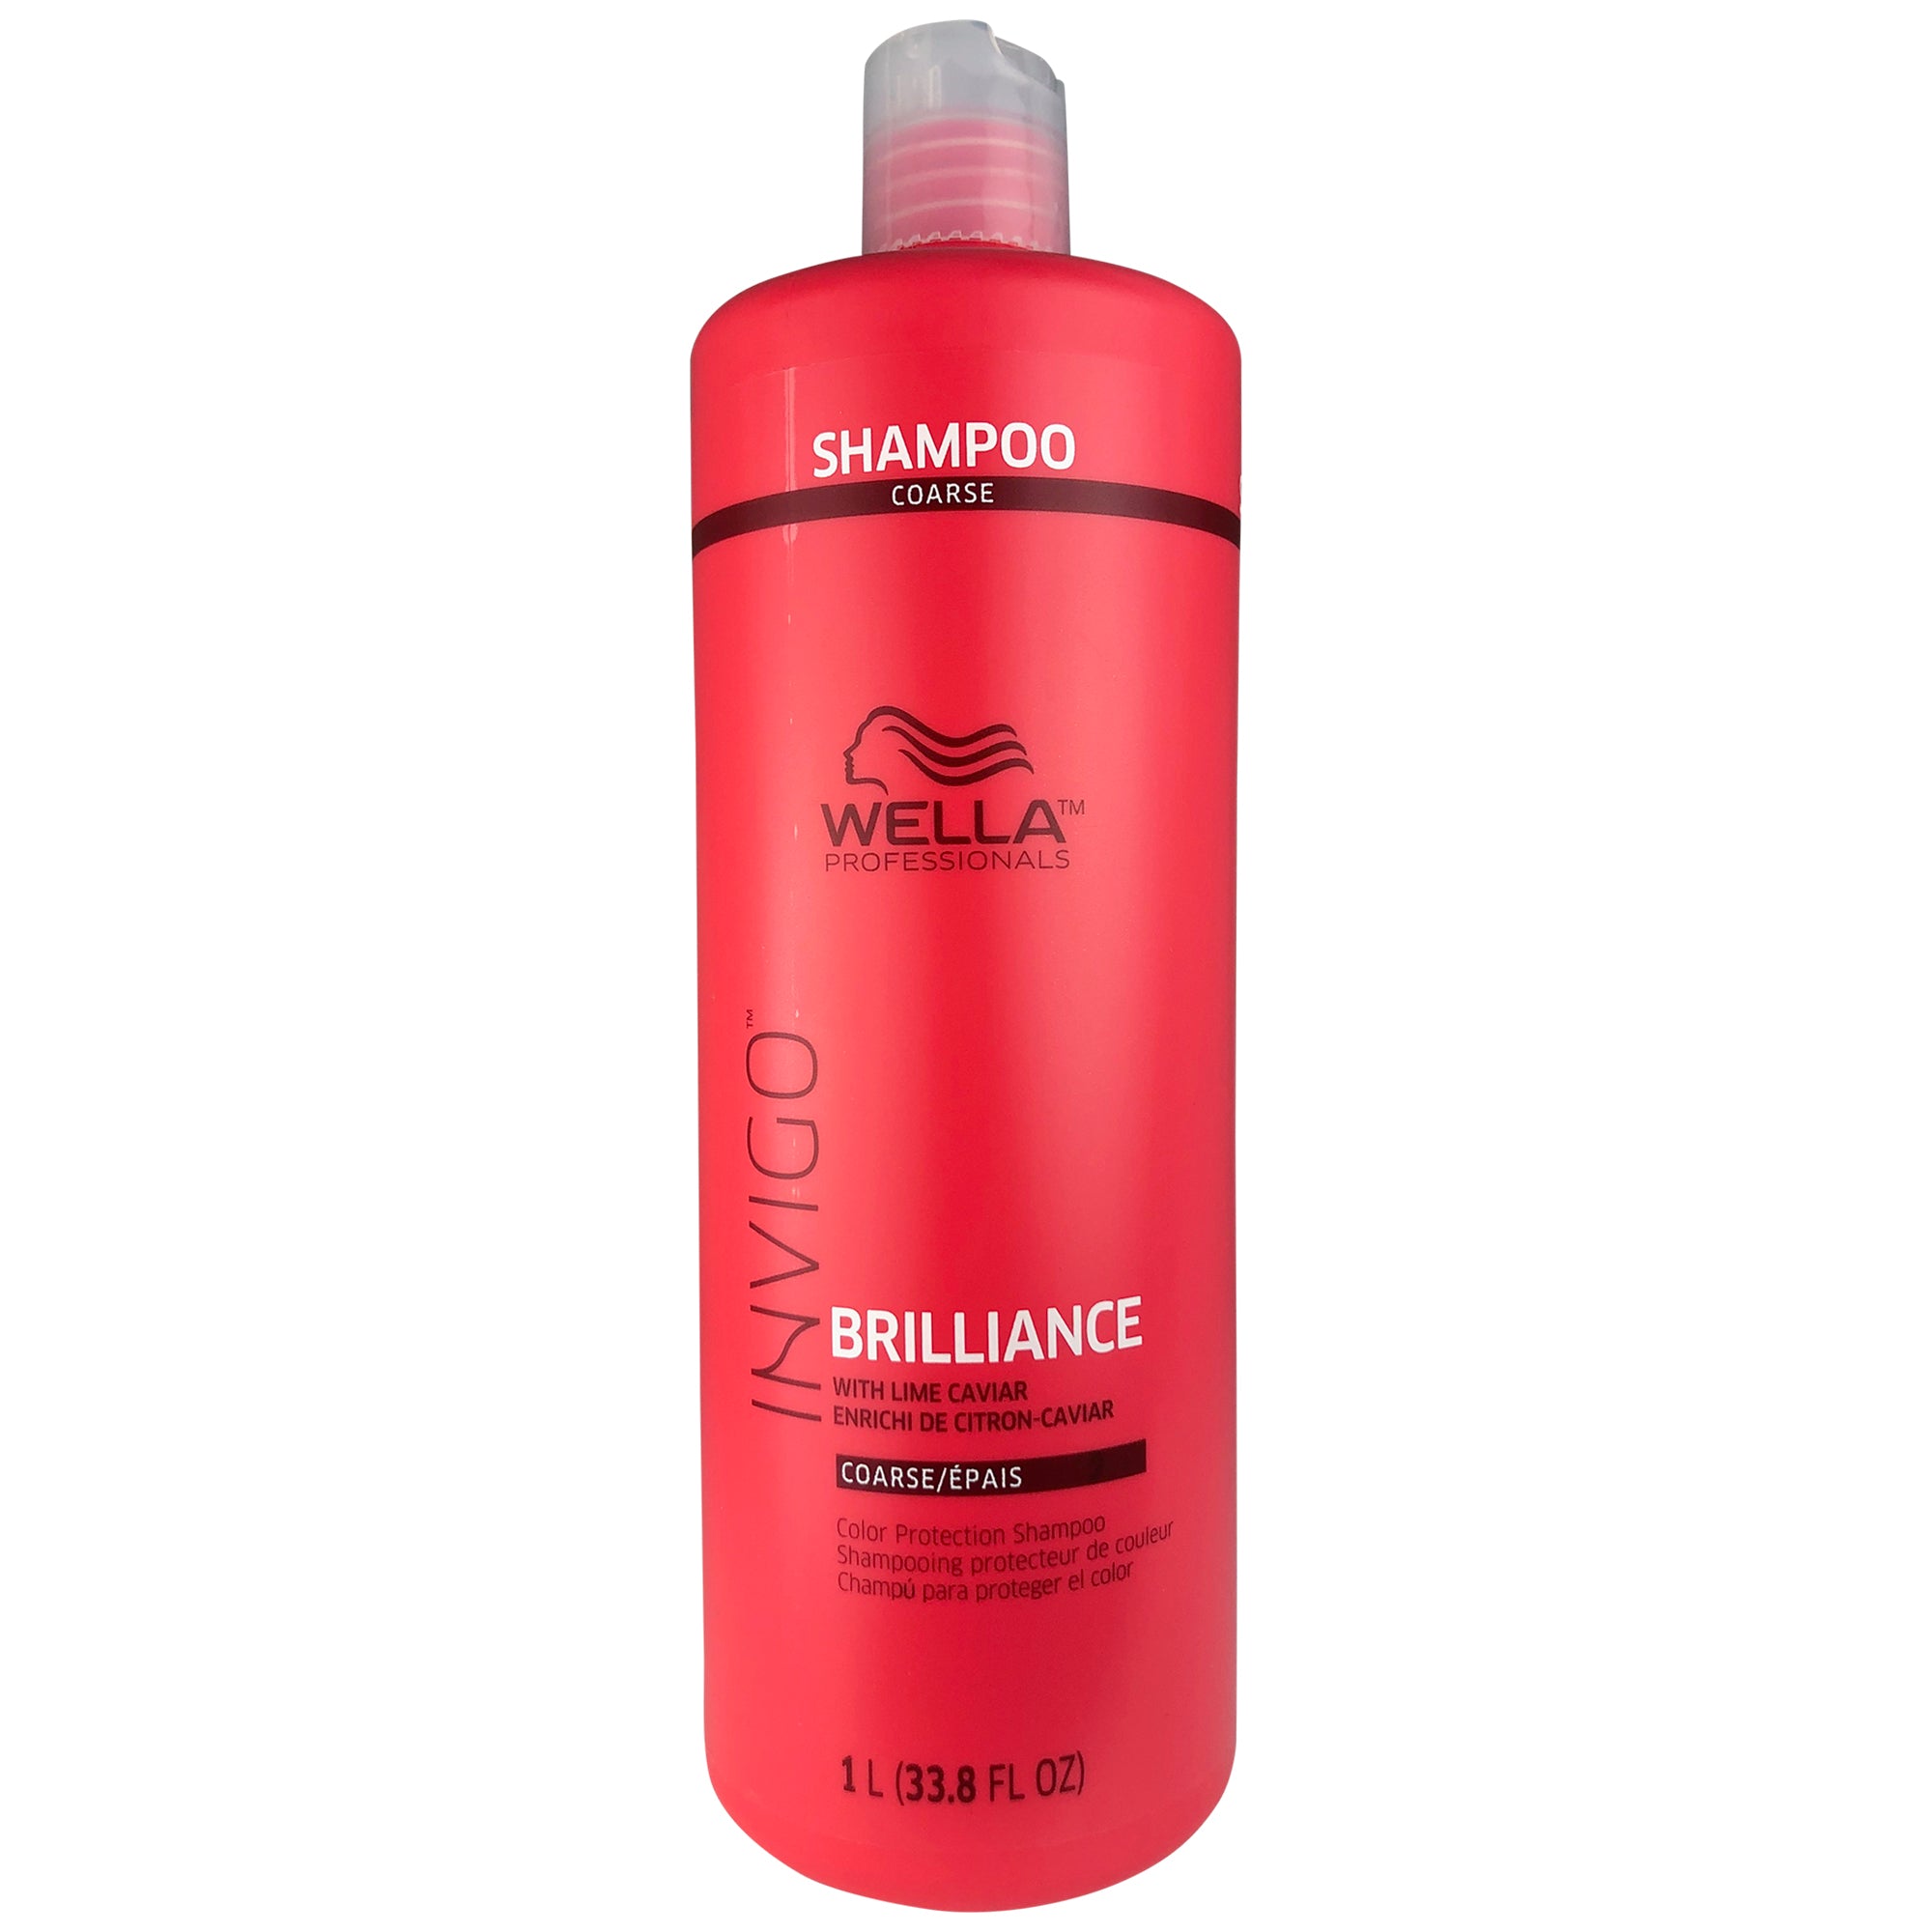 WELLA Invigo Brilliance Shampoo with Lime Caviar Color Protection for Coarse Hair 33.8 oz